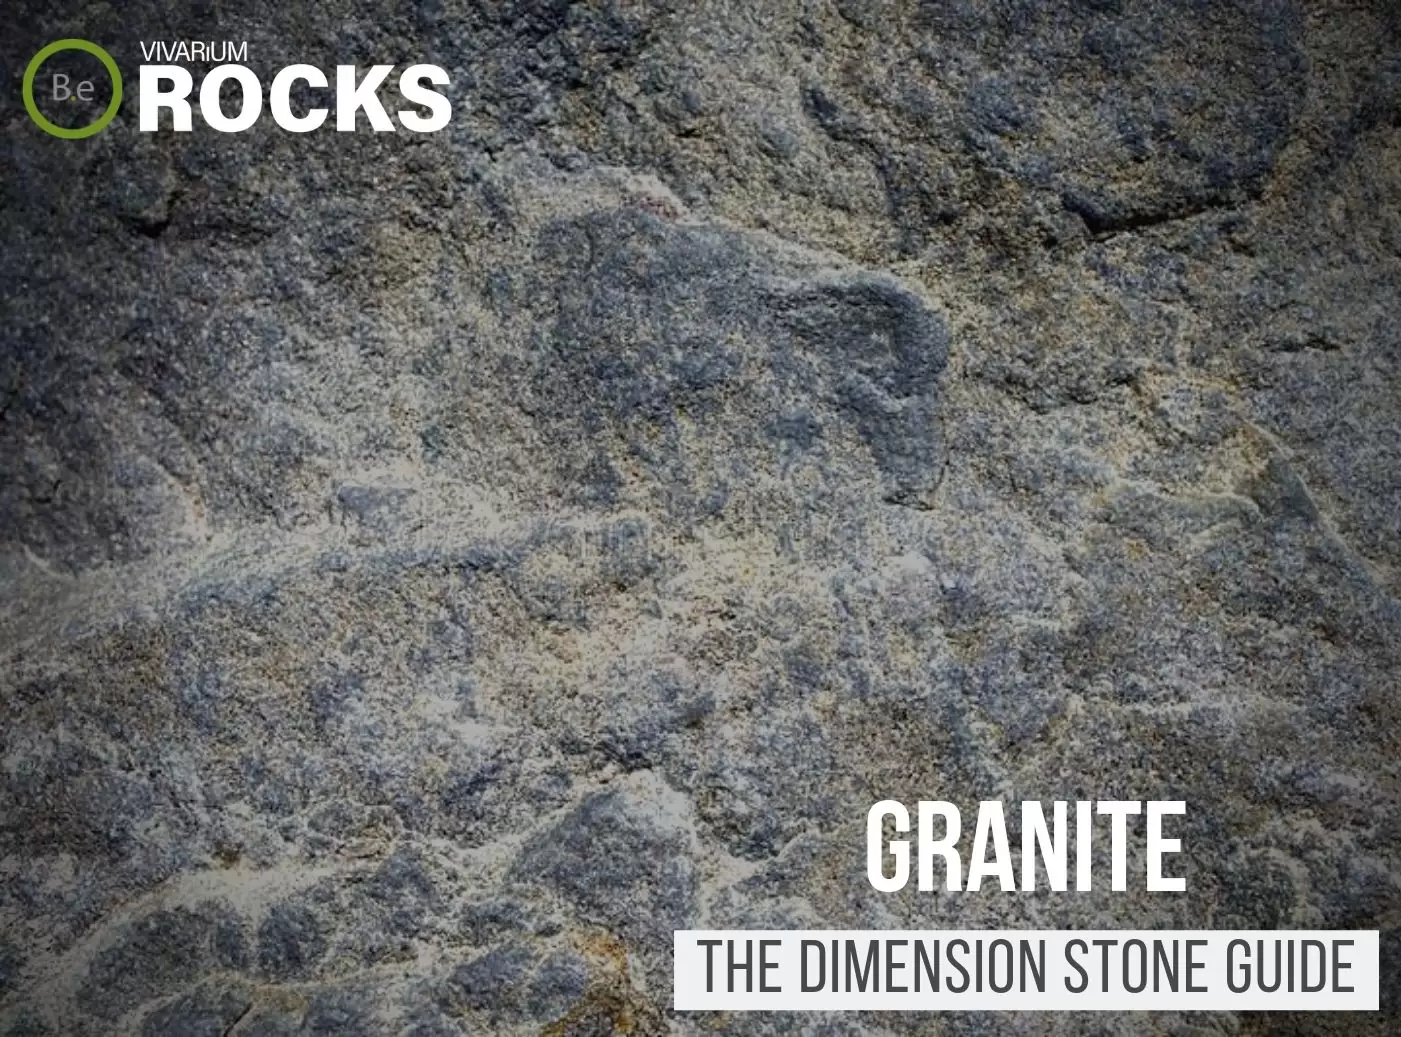 Granite Rock "Dimension Stone" Hardscape Guide